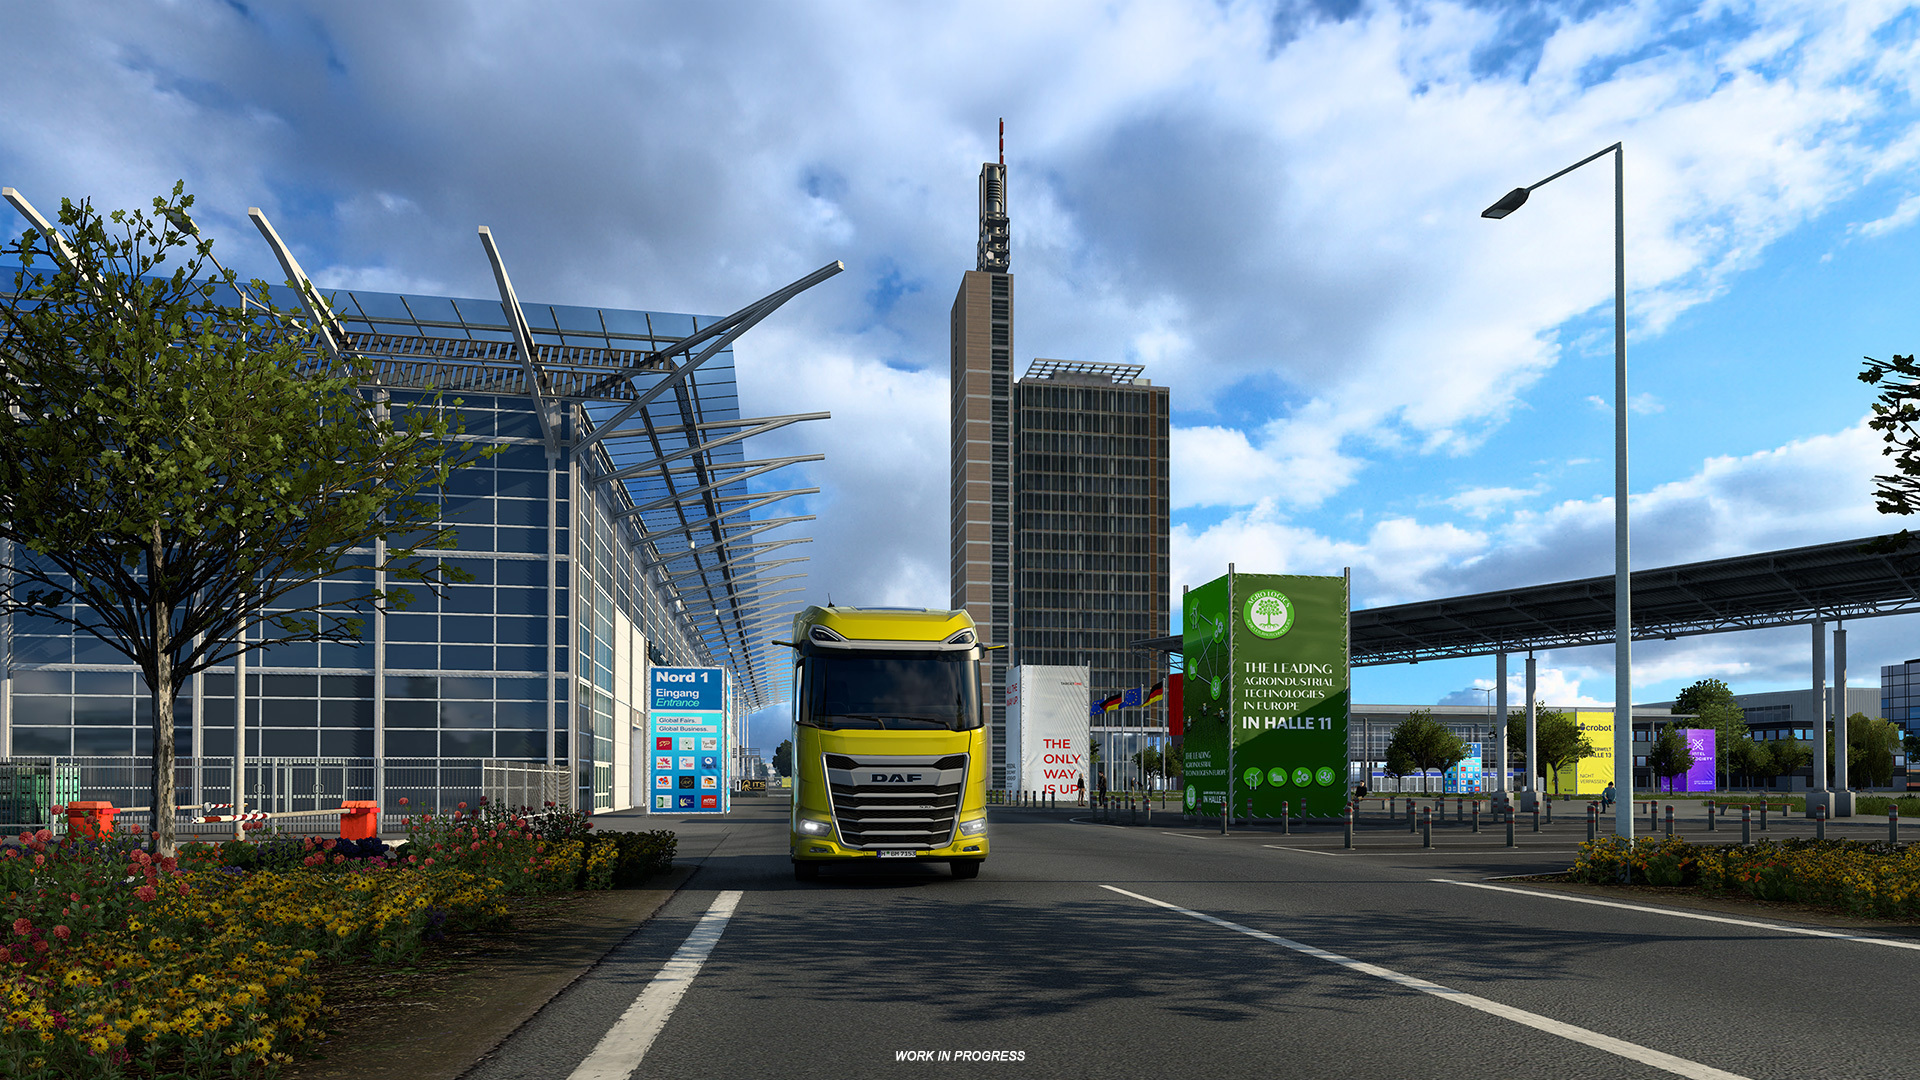 欧洲卡车模拟2 1.45 – 汉诺威重制